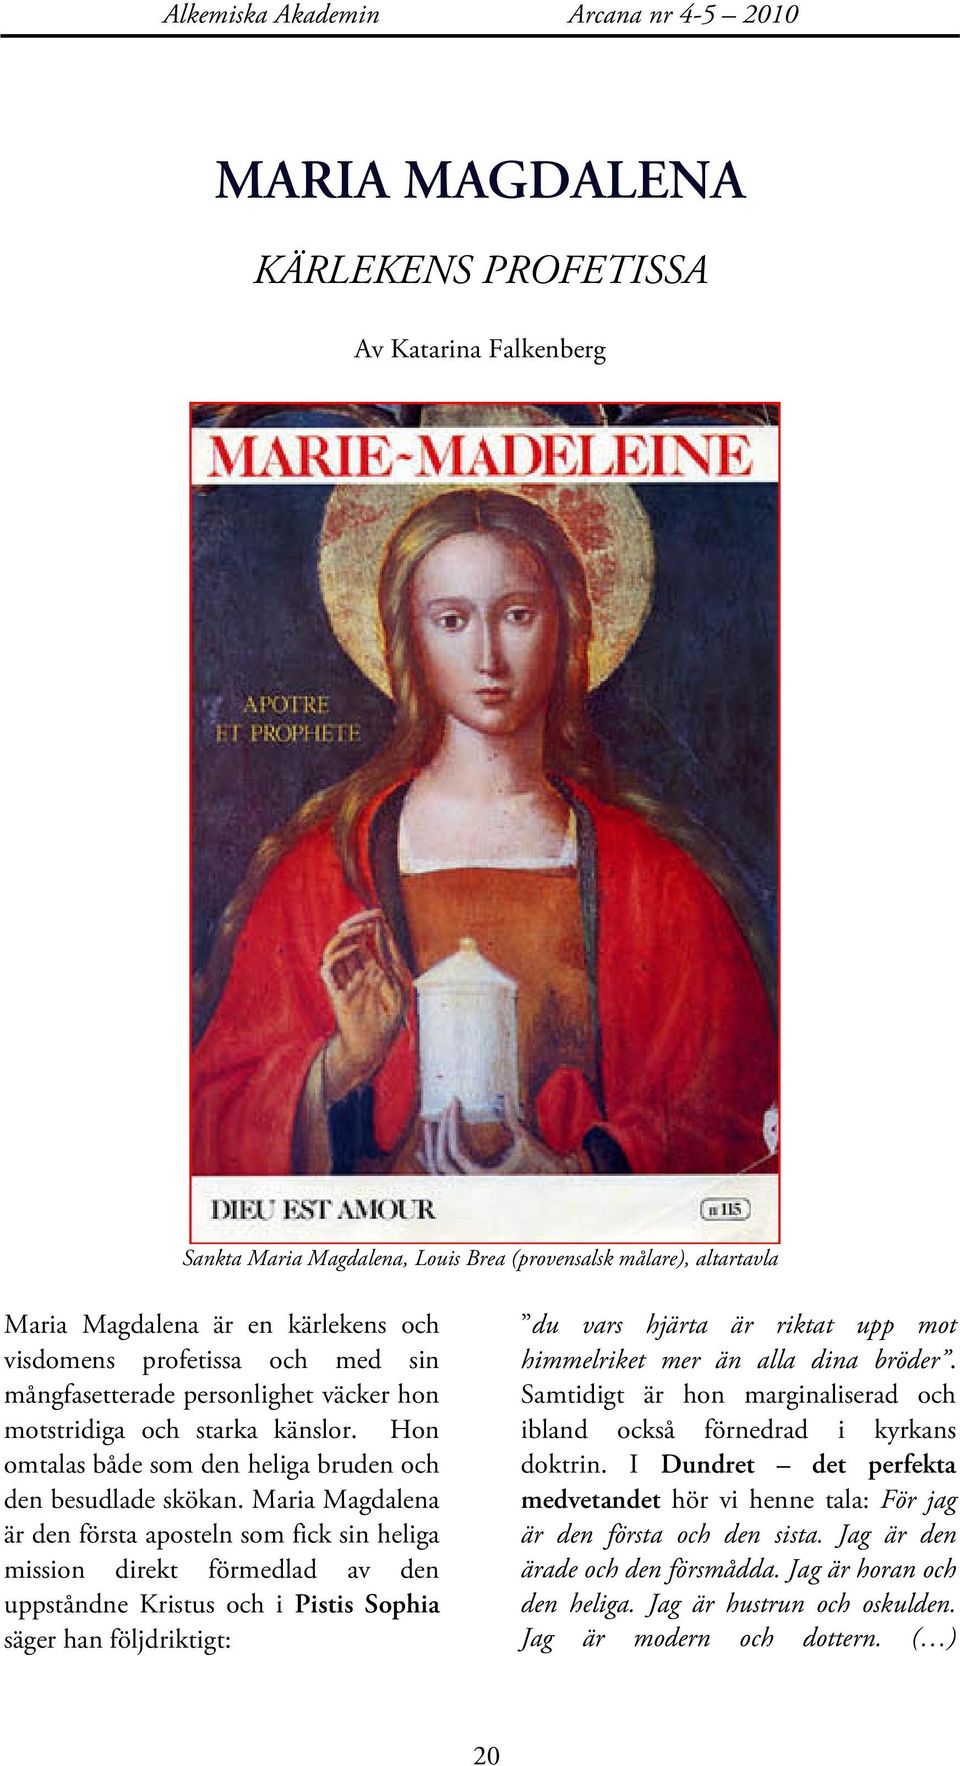 Maria Magdalena är den första aposteln som fick sin heliga mission direkt förmedlad av den uppståndne Kristus och i Pistis Sophia säger han följdriktigt: du vars hjärta är riktat upp mot himmelriket